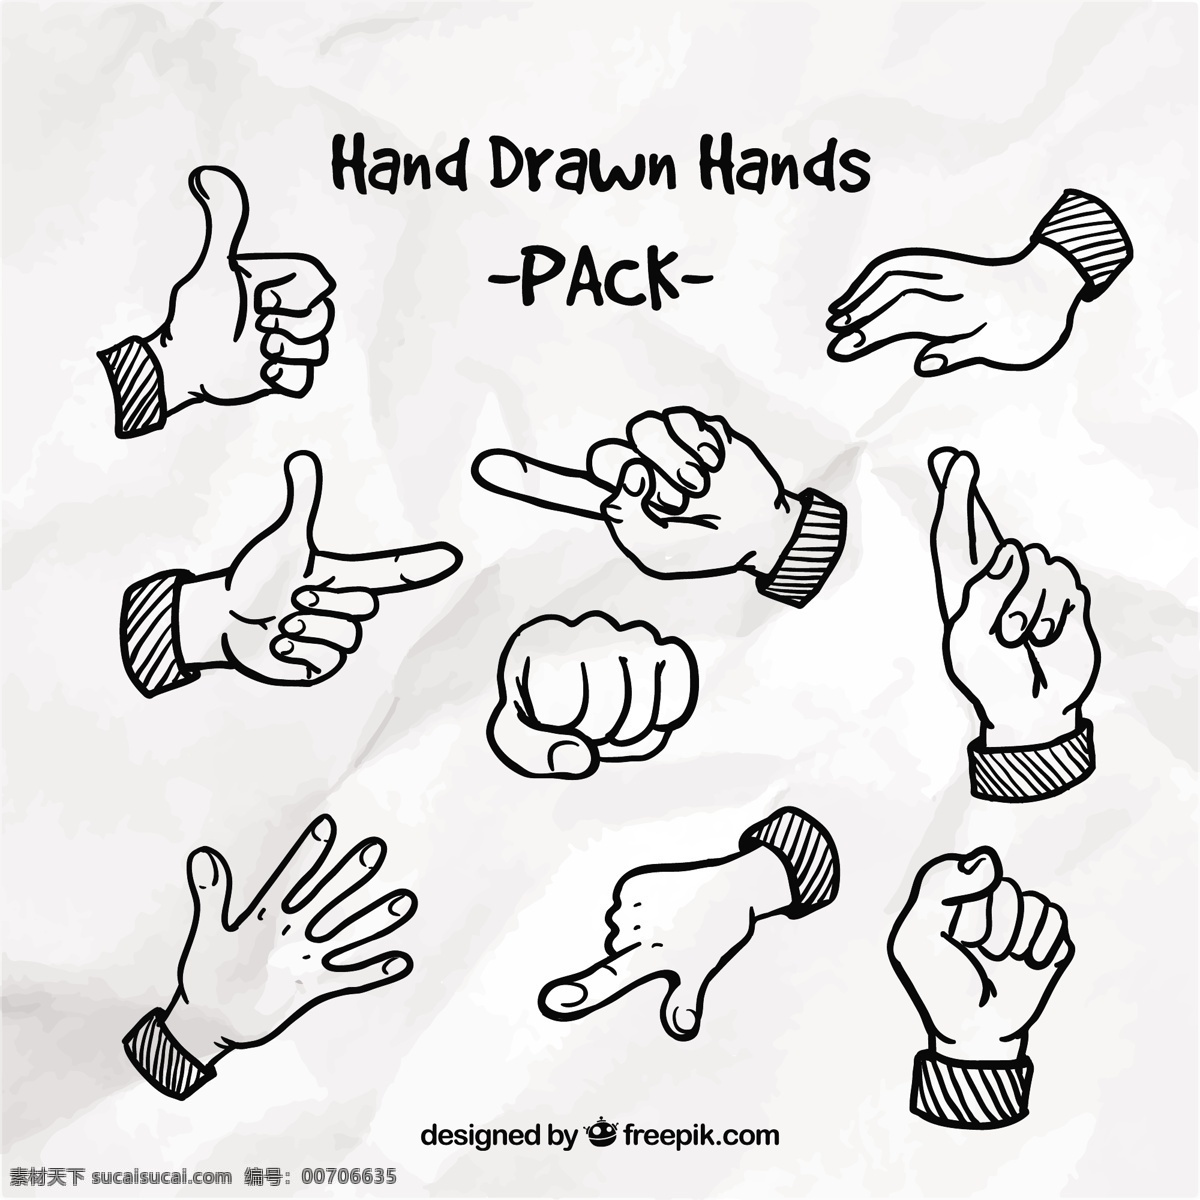 手拉着手包 手 手画 标志 绘画 手工绘图 信号 包 绘制手势 粗略 白色